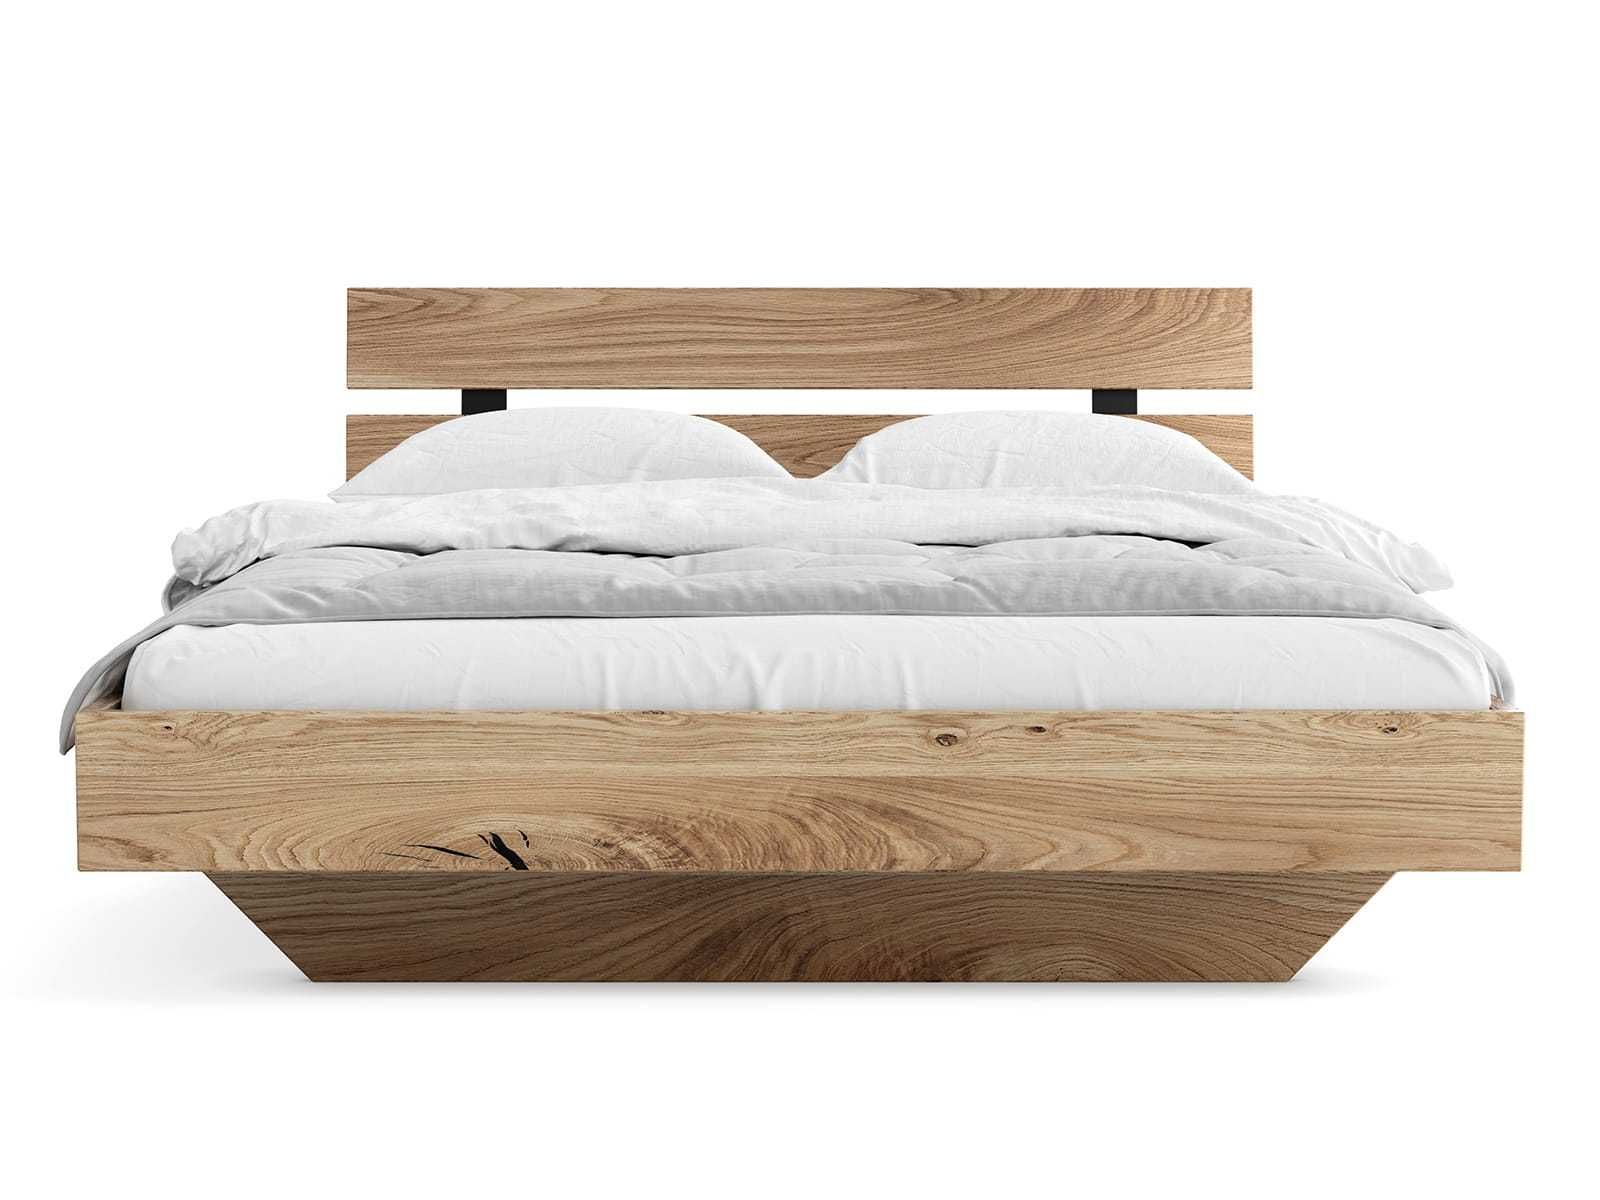 Łóżko drewniane Dębowe 180x200cm Lewitujące Rossano, różne wymiary